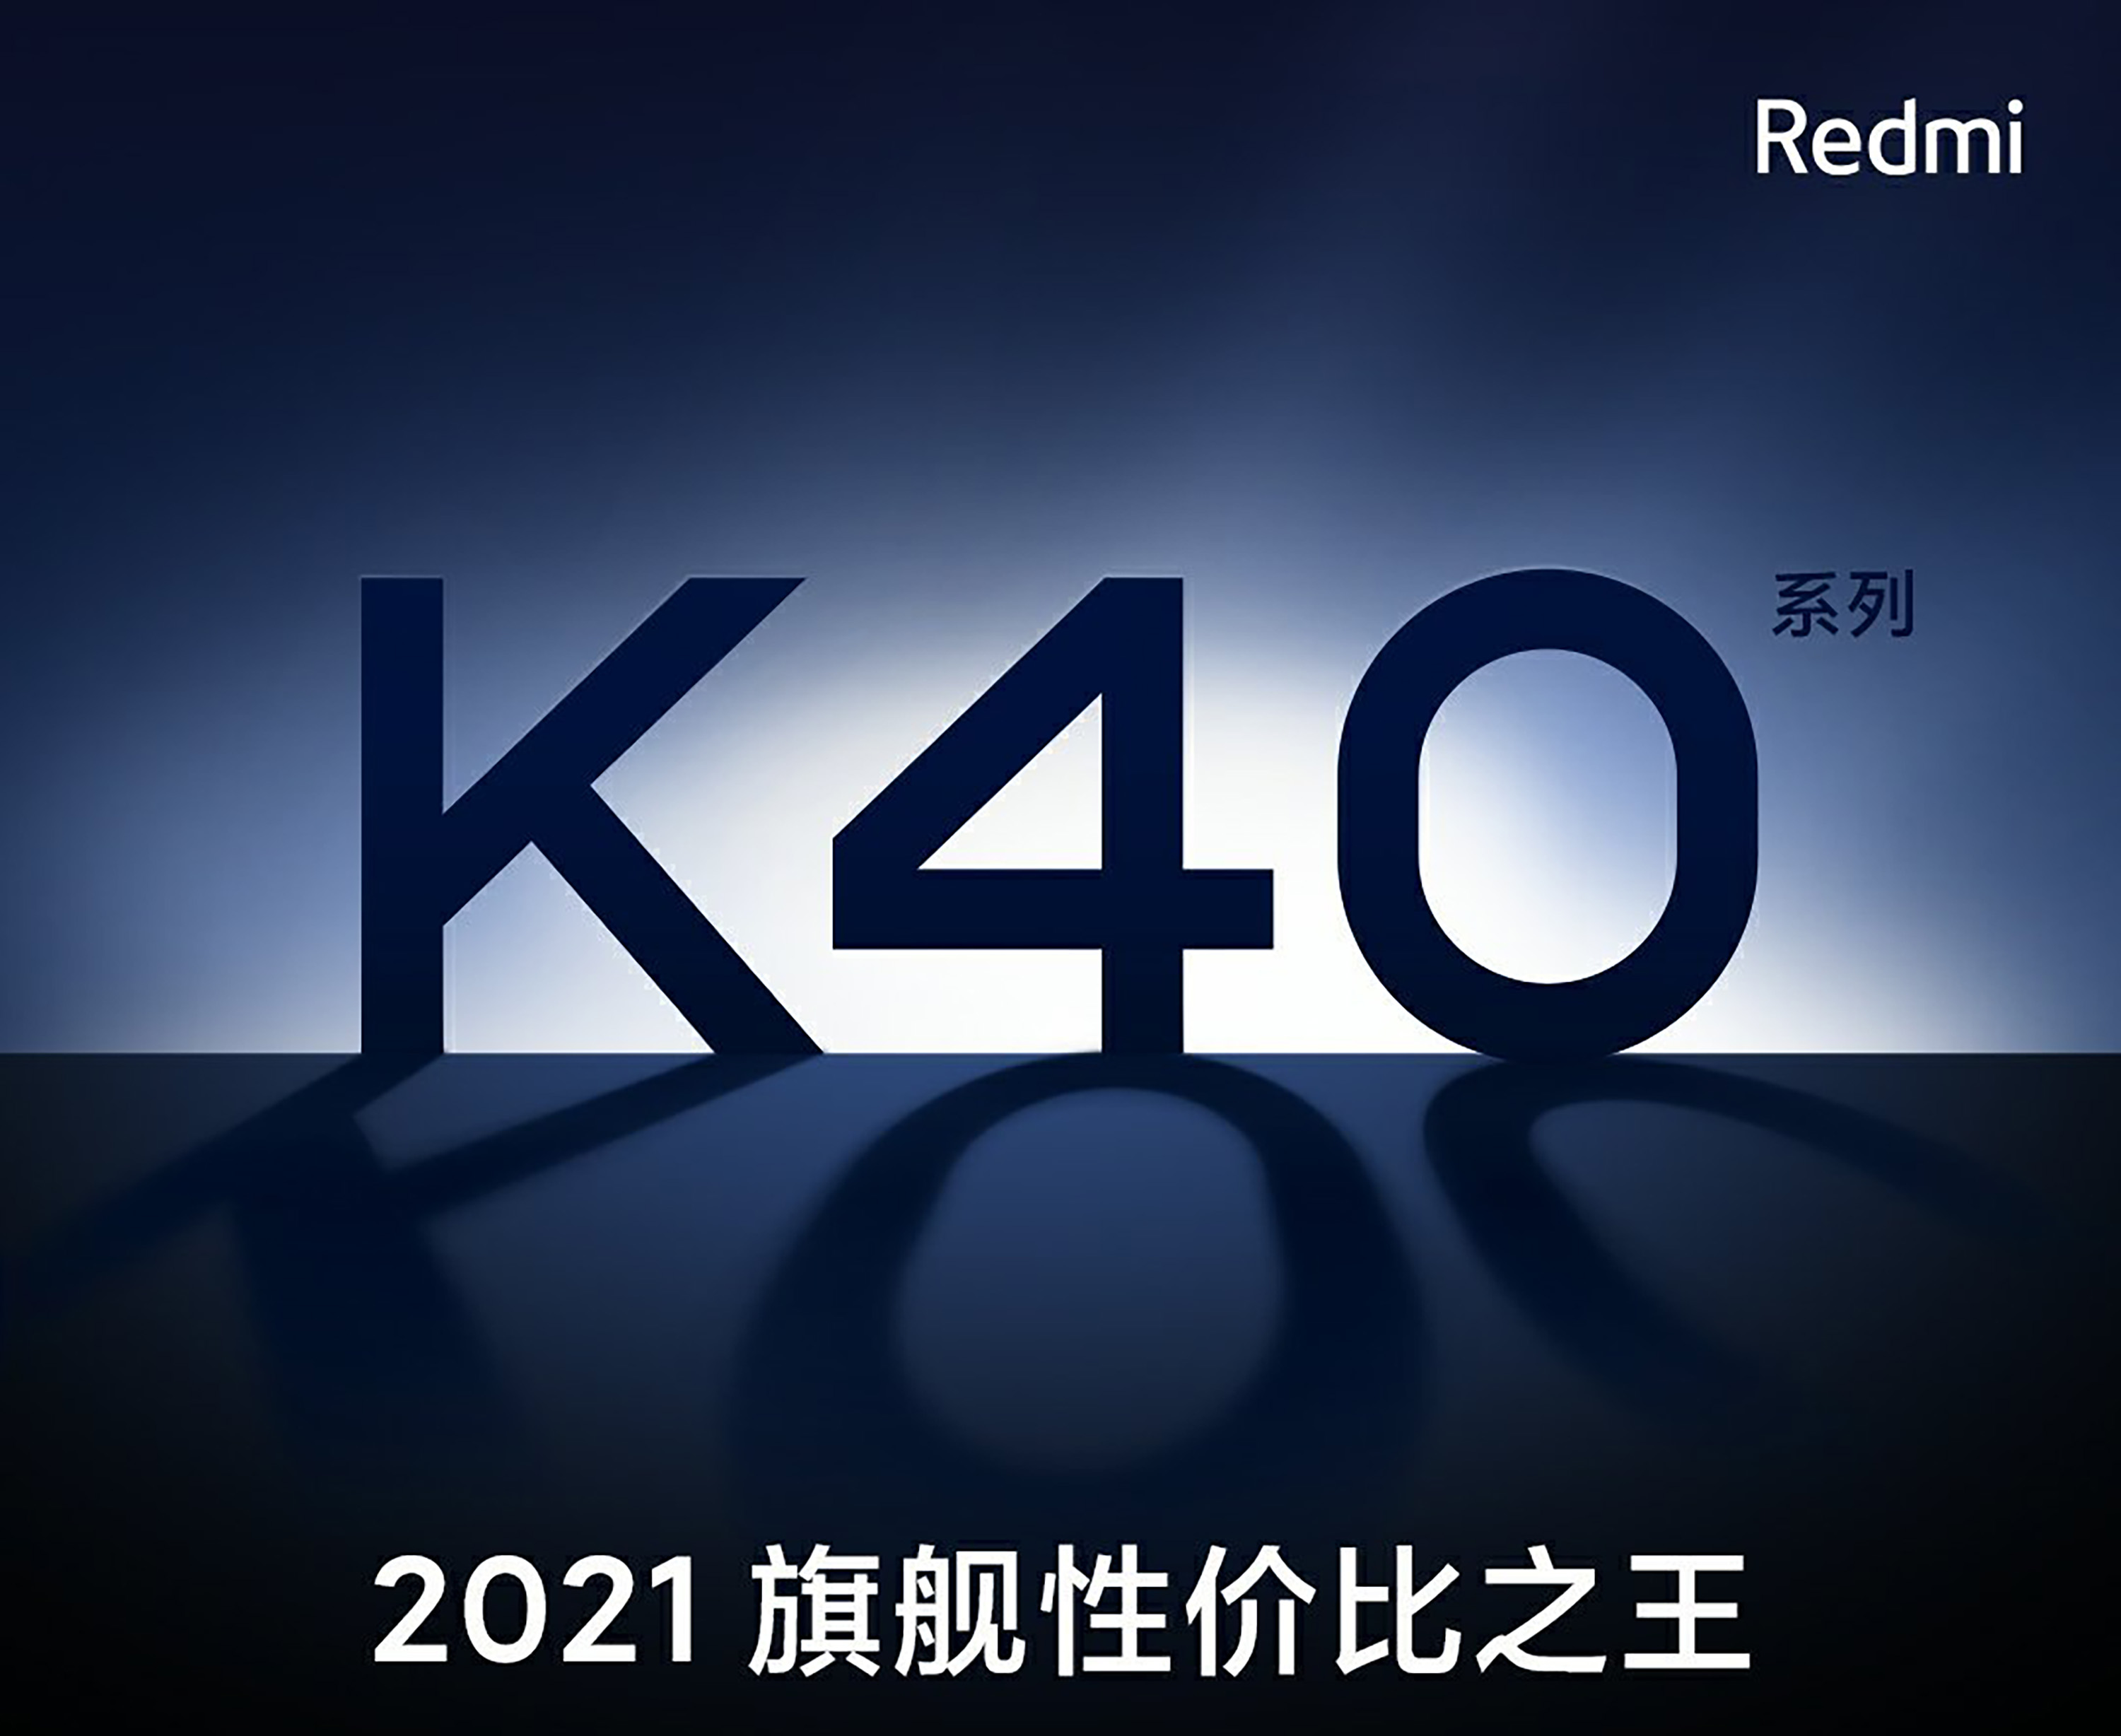 Le Redmi K40 fait déjà parler de lui : un Snapdragon 888 à petit prix